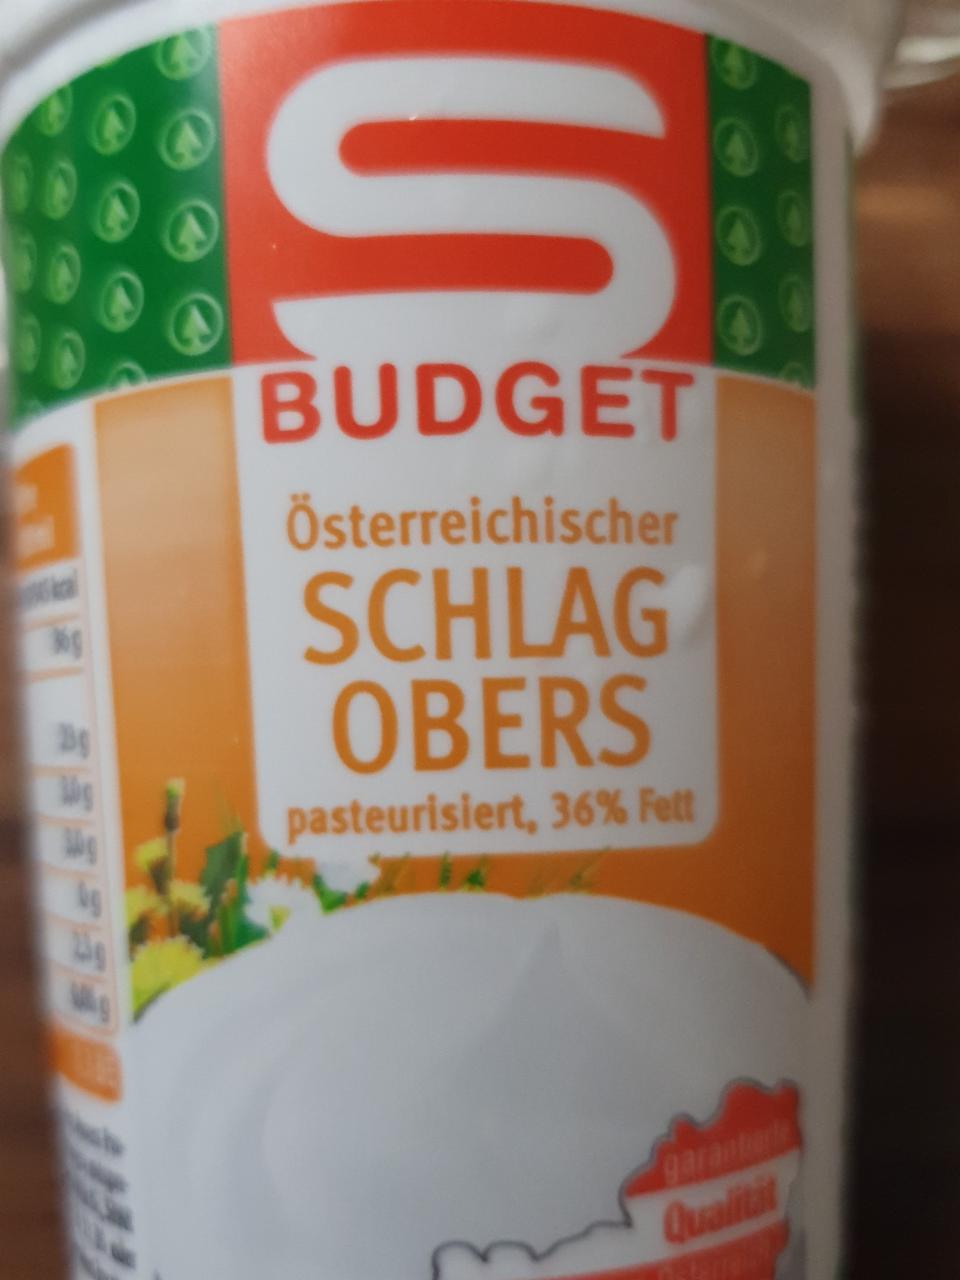 Fotografie - Österreichischer Schlagobers, pasteurisiert, 36% Fett S Budget